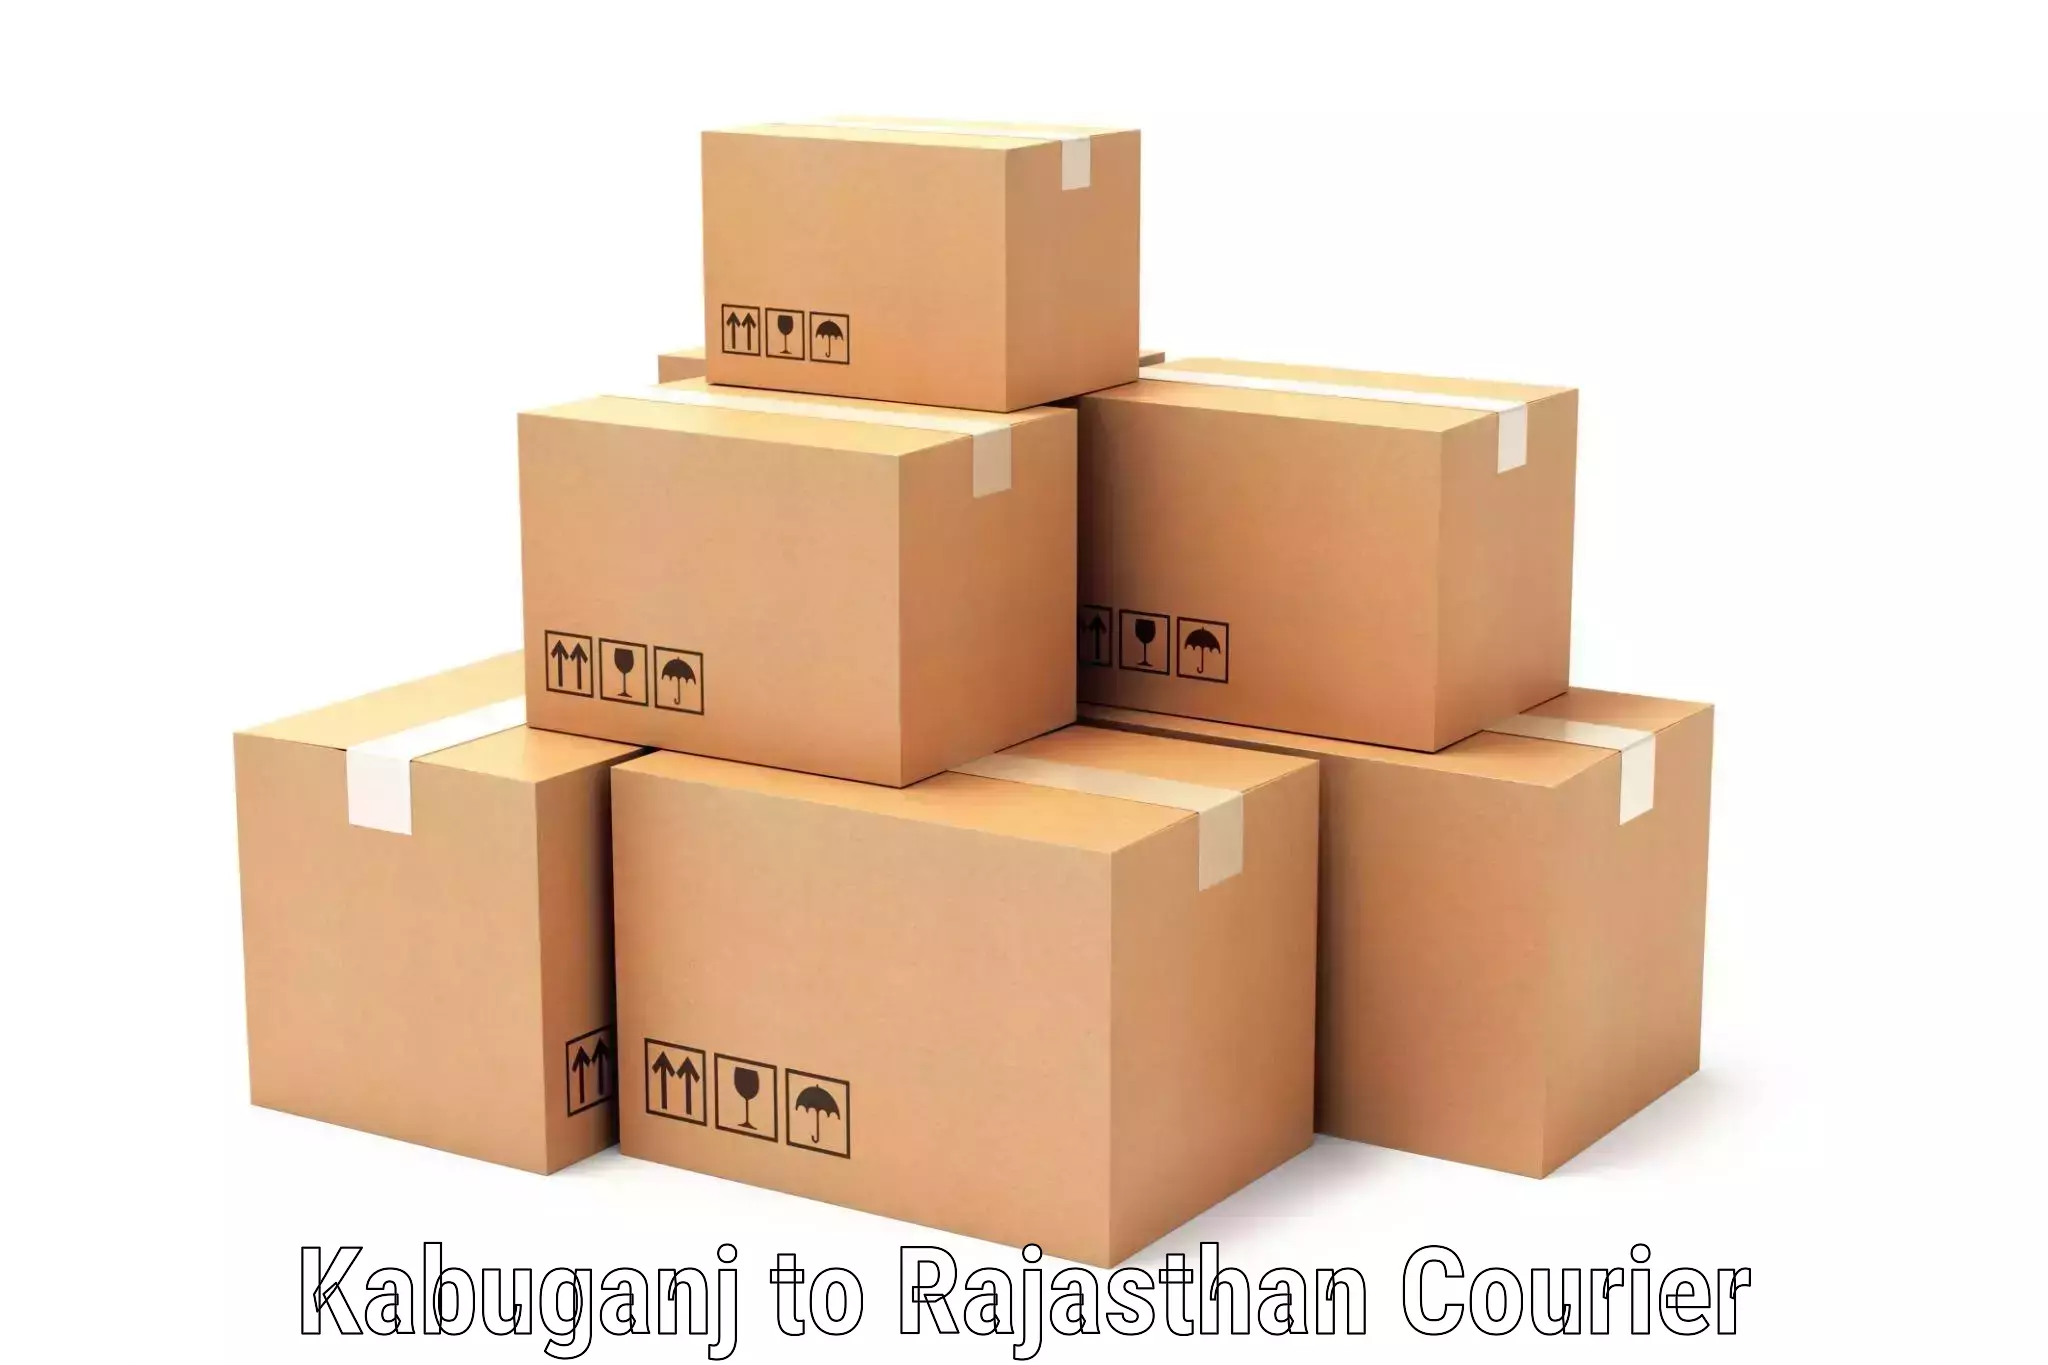 Specialized shipment handling in Kabuganj to Tibbi